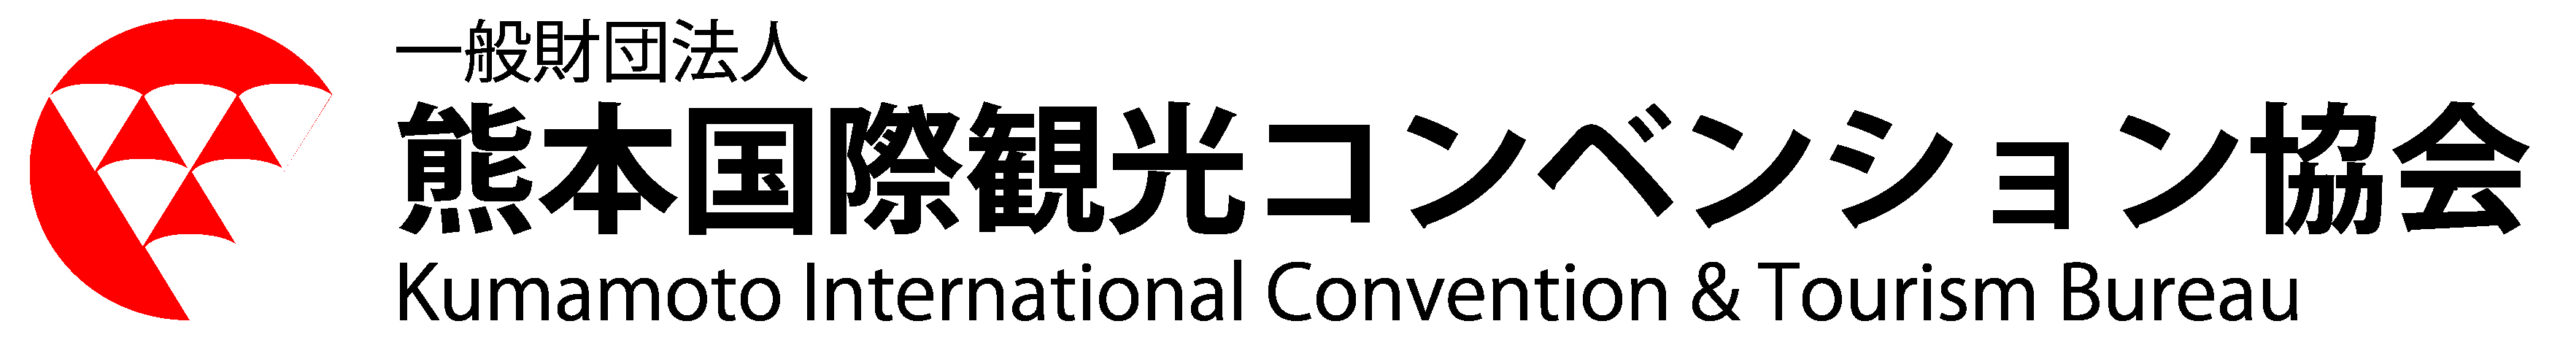 熊本観光国際コンベンション協会